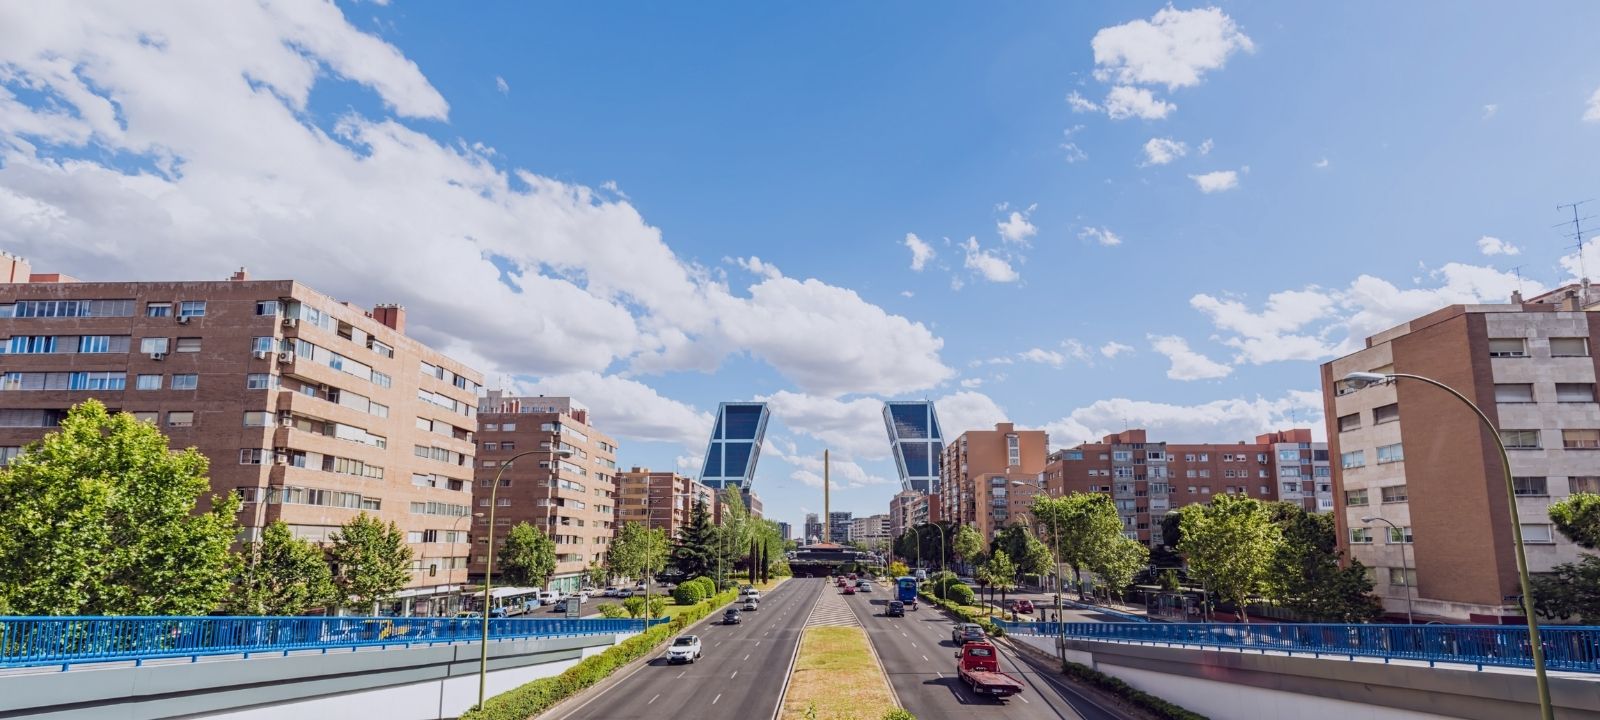 Inmobiliaria barata Madrid. Listado de inmobiliarias económicas en la capital